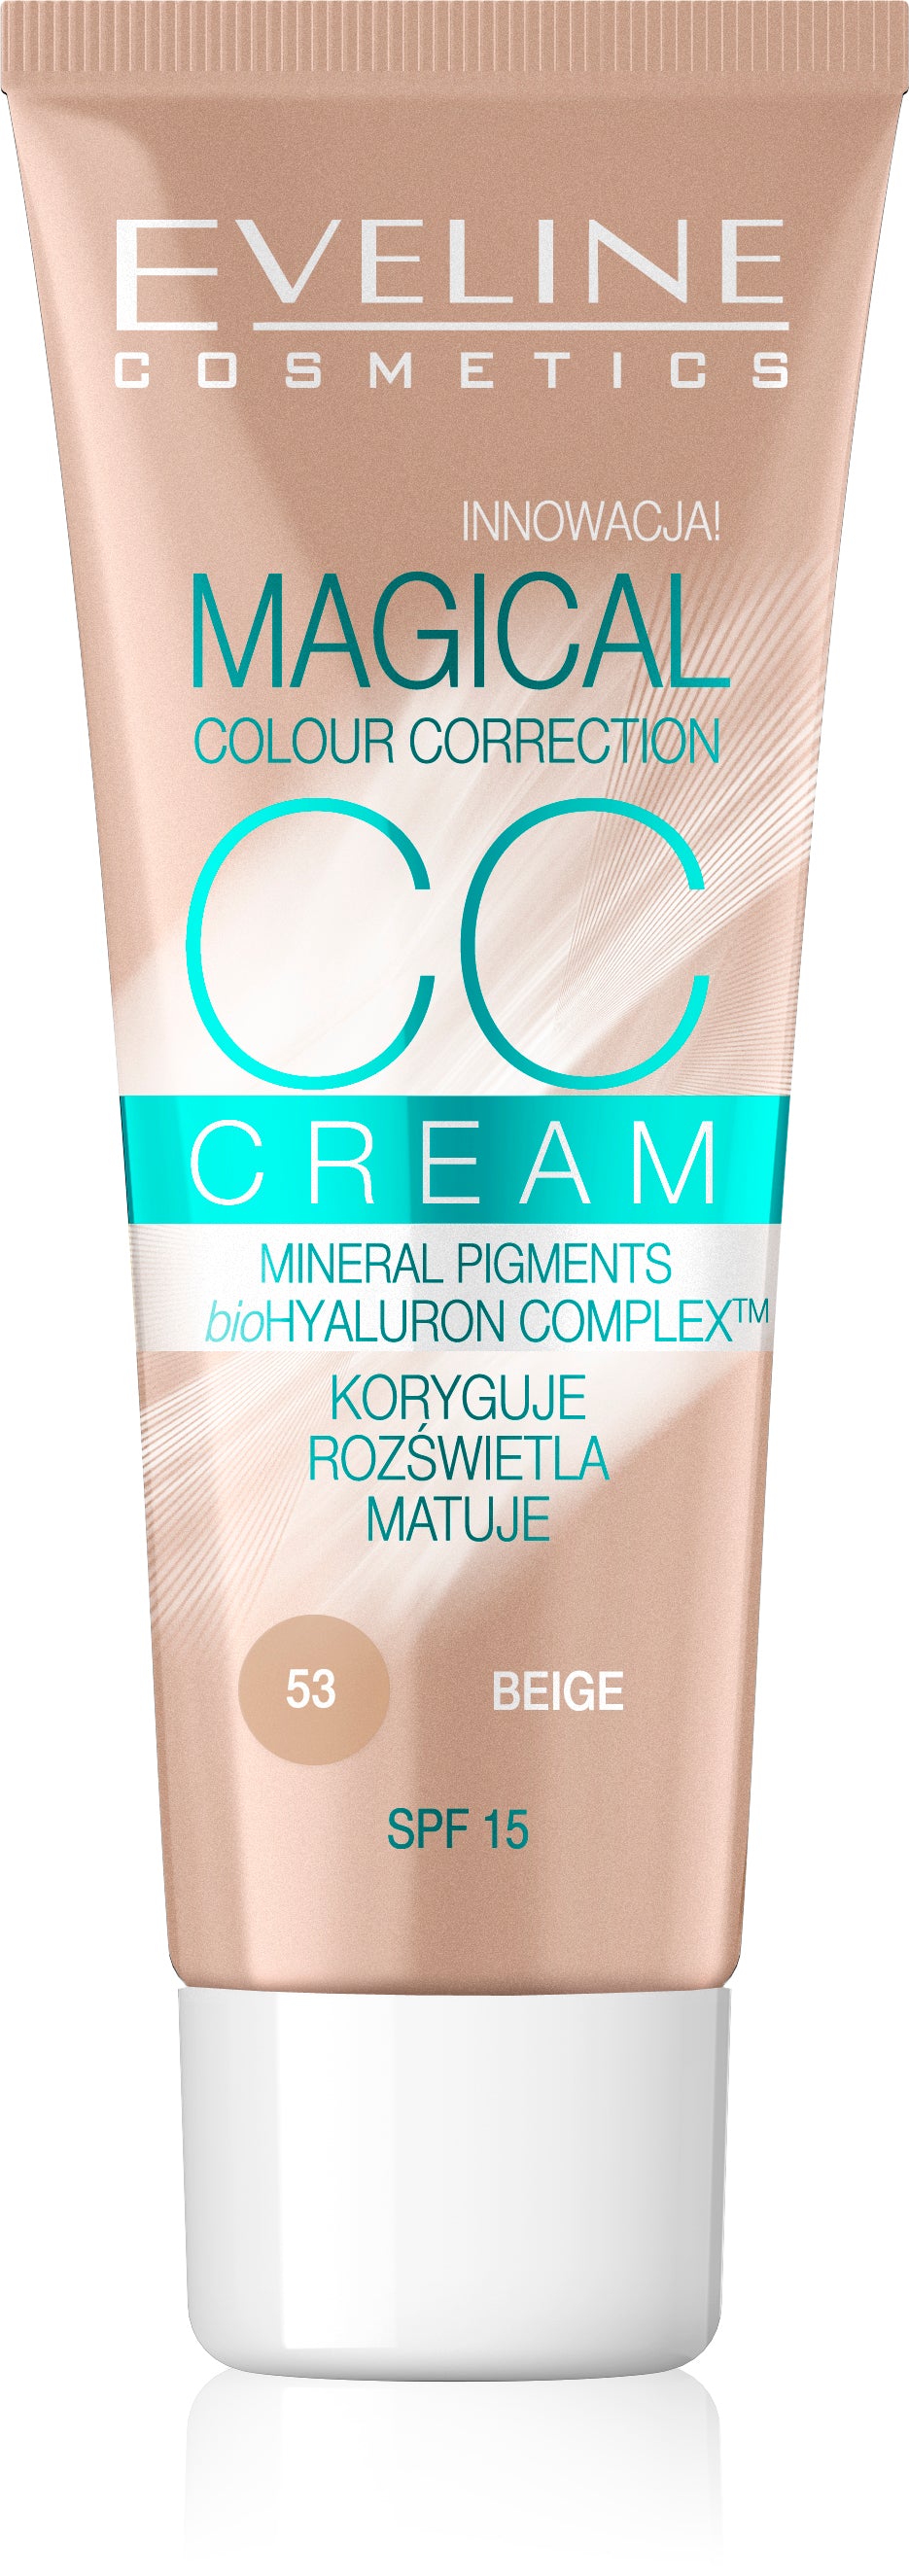 CC Cream Magical Colour Correction Natural 30ML